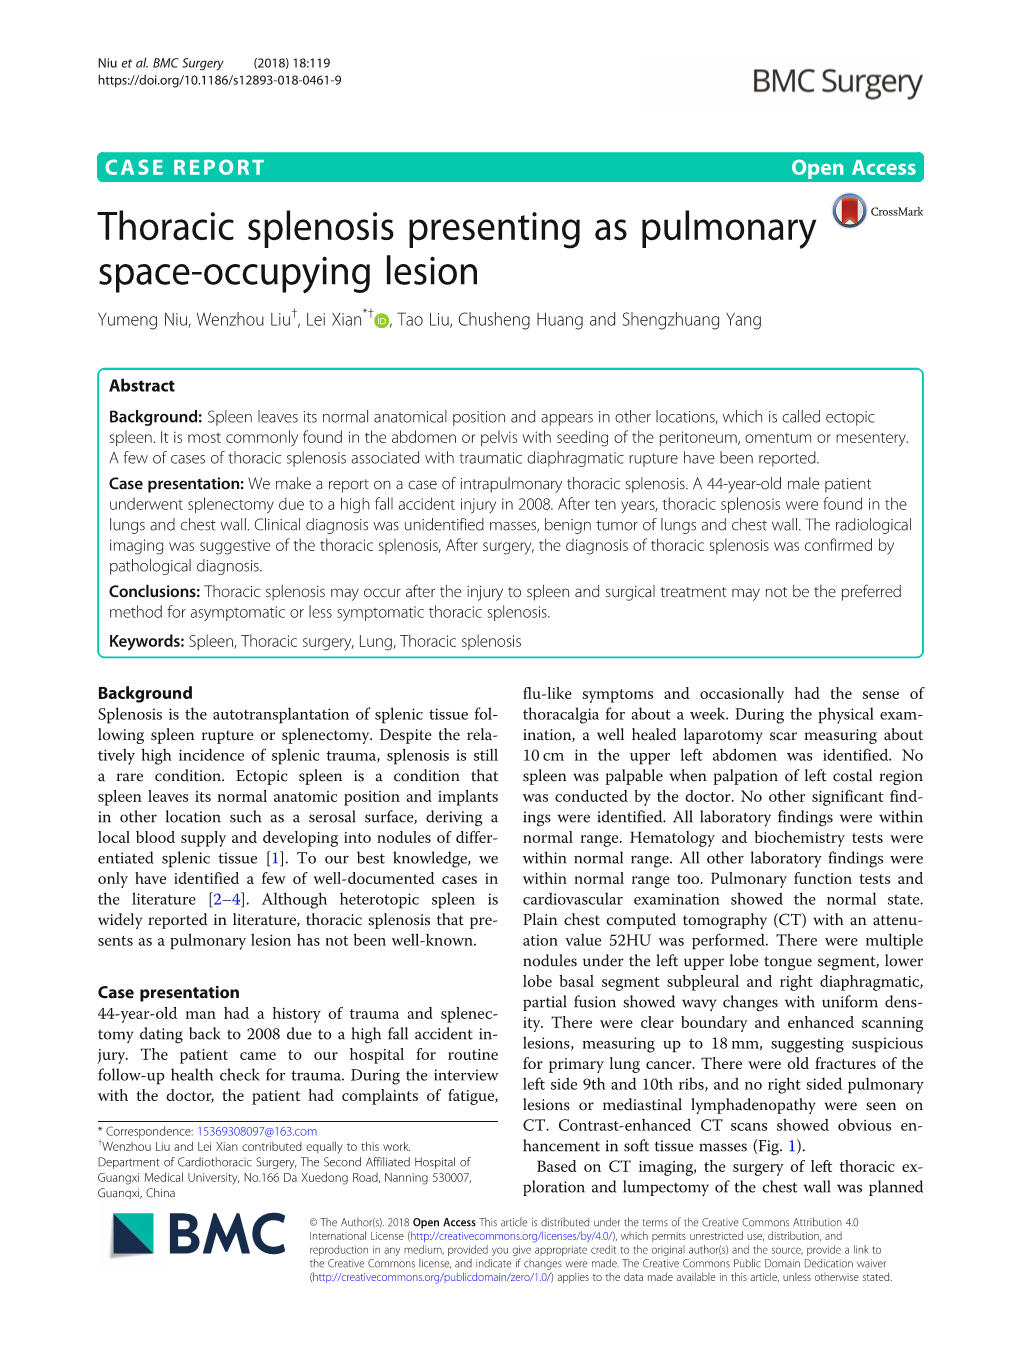 Thoracic Splenosis Presenting As Pulmonary Space-Occupying Lesion Yumeng Niu, Wenzhou Liu†, Lei Xian*† , Tao Liu, Chusheng Huang and Shengzhuang Yang